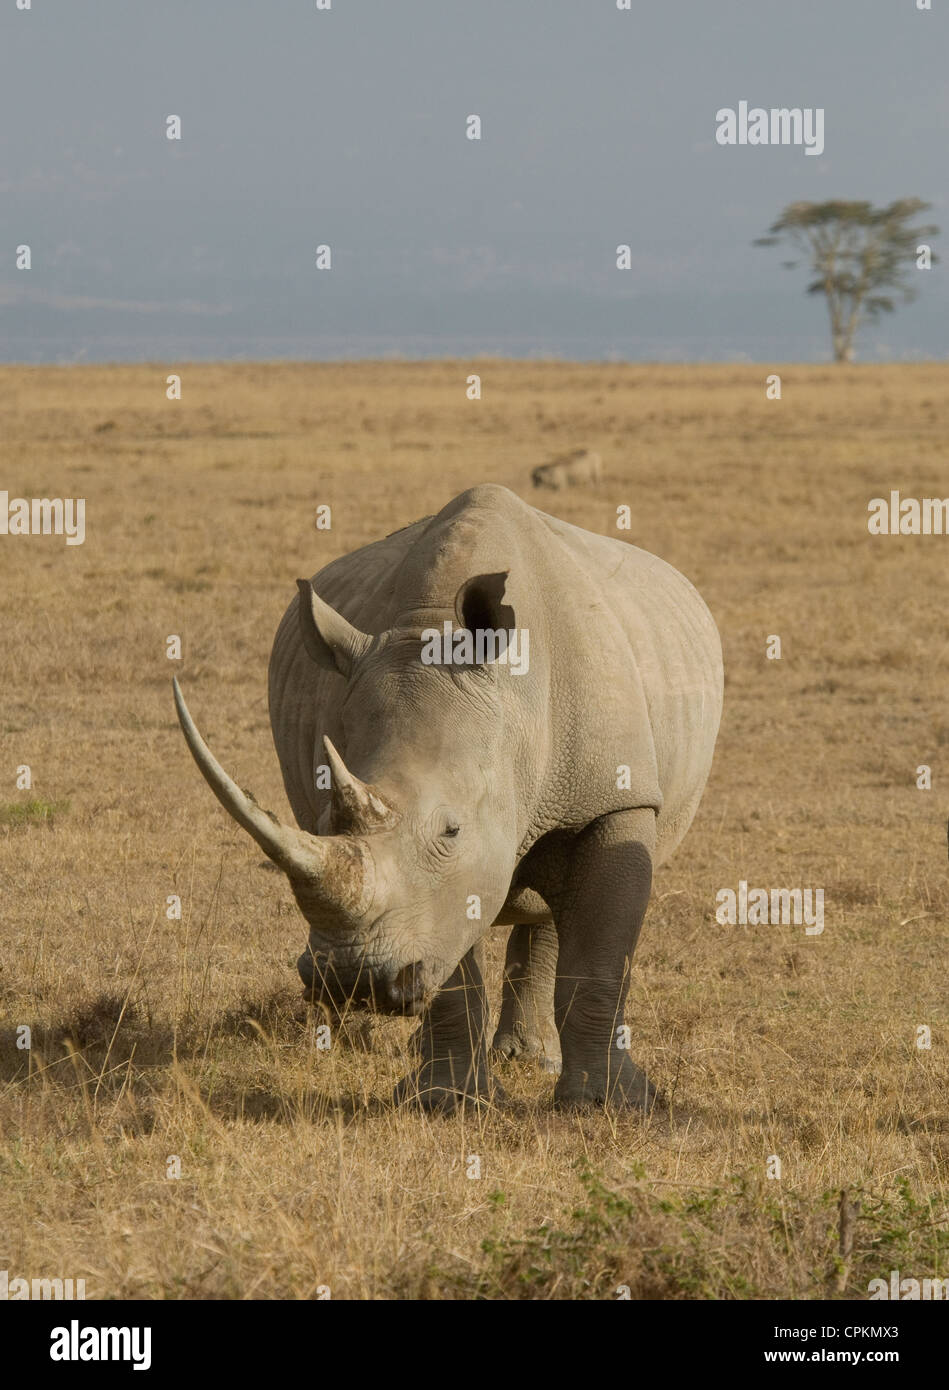 White rhino in plains Stock Photo